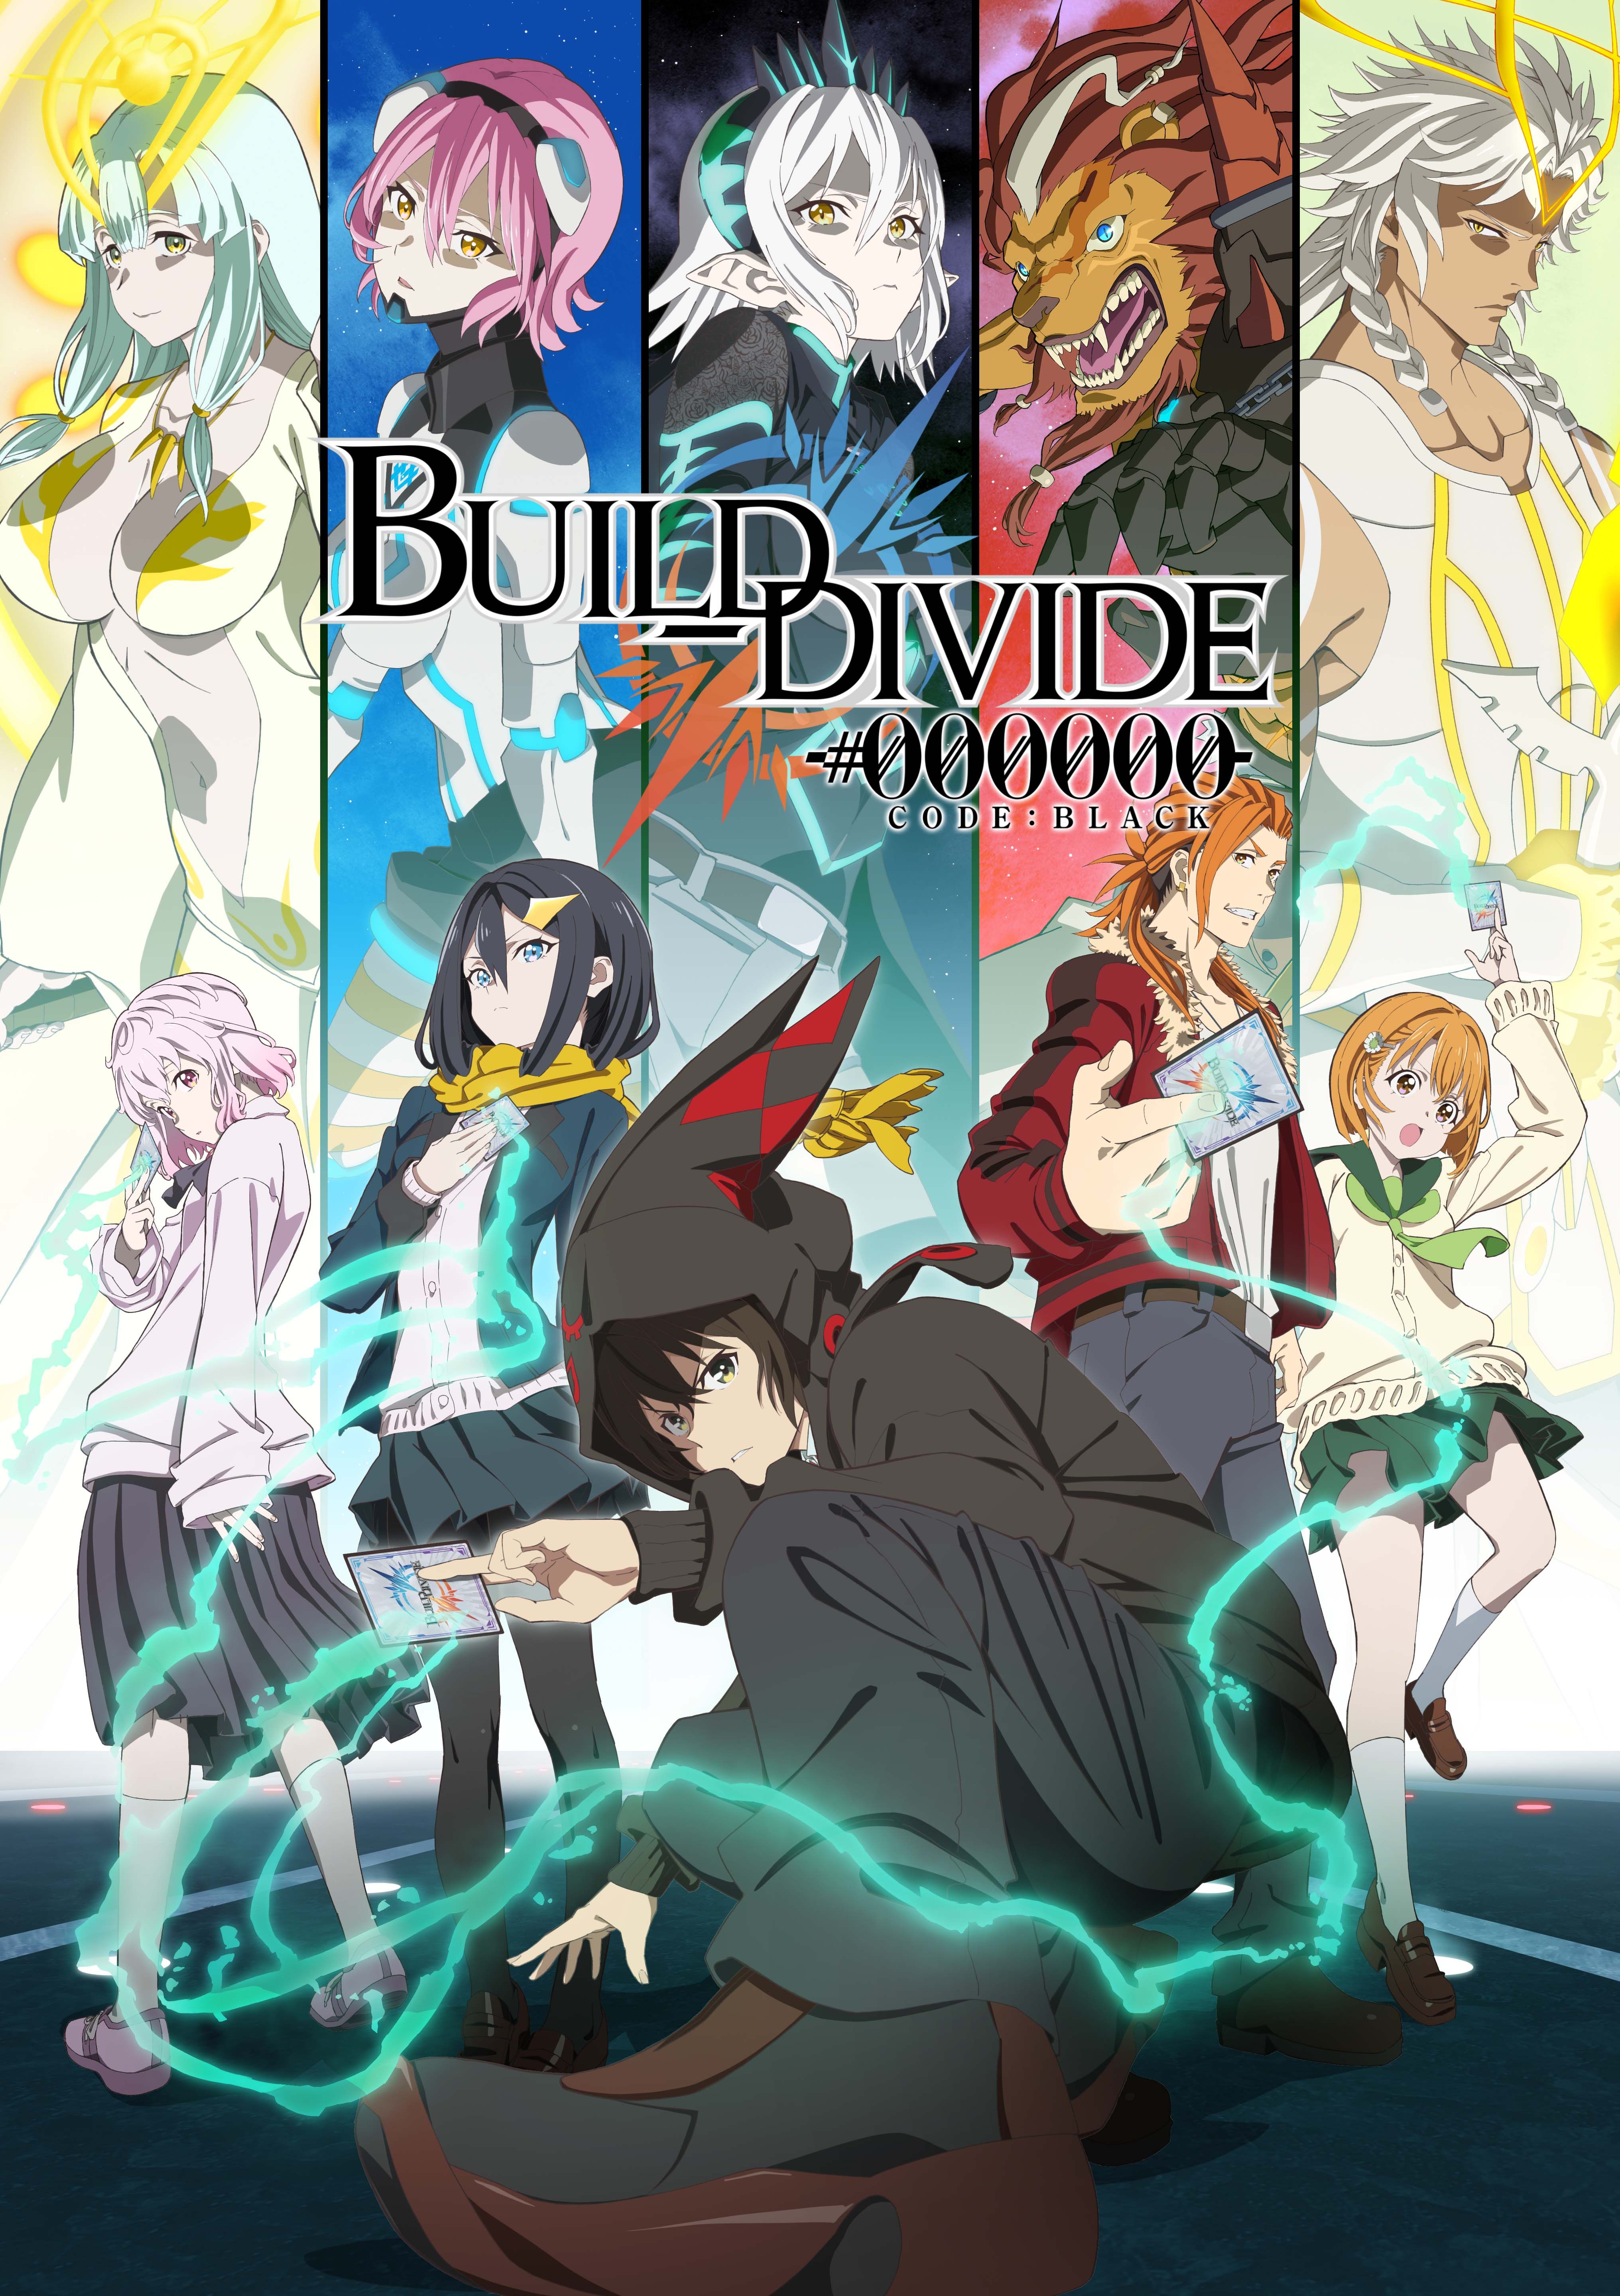 Build Divide #000000 (Code Black)